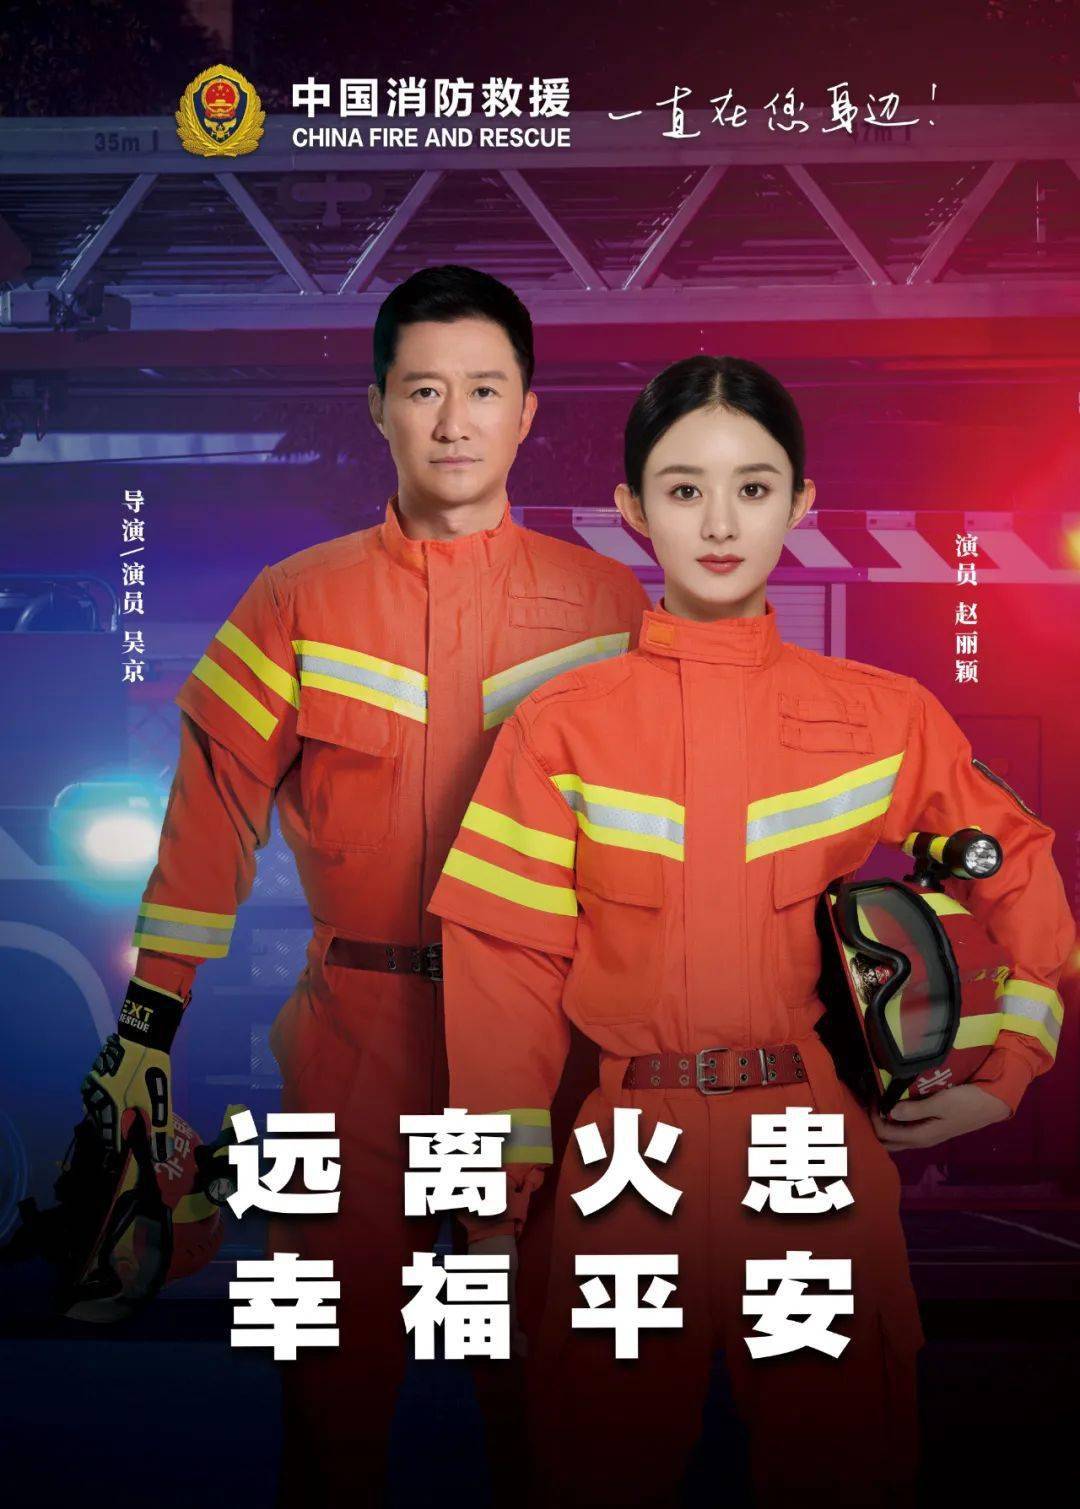 【消防安全三年行动】来和吴京,赵丽颖一起学习消防知识!